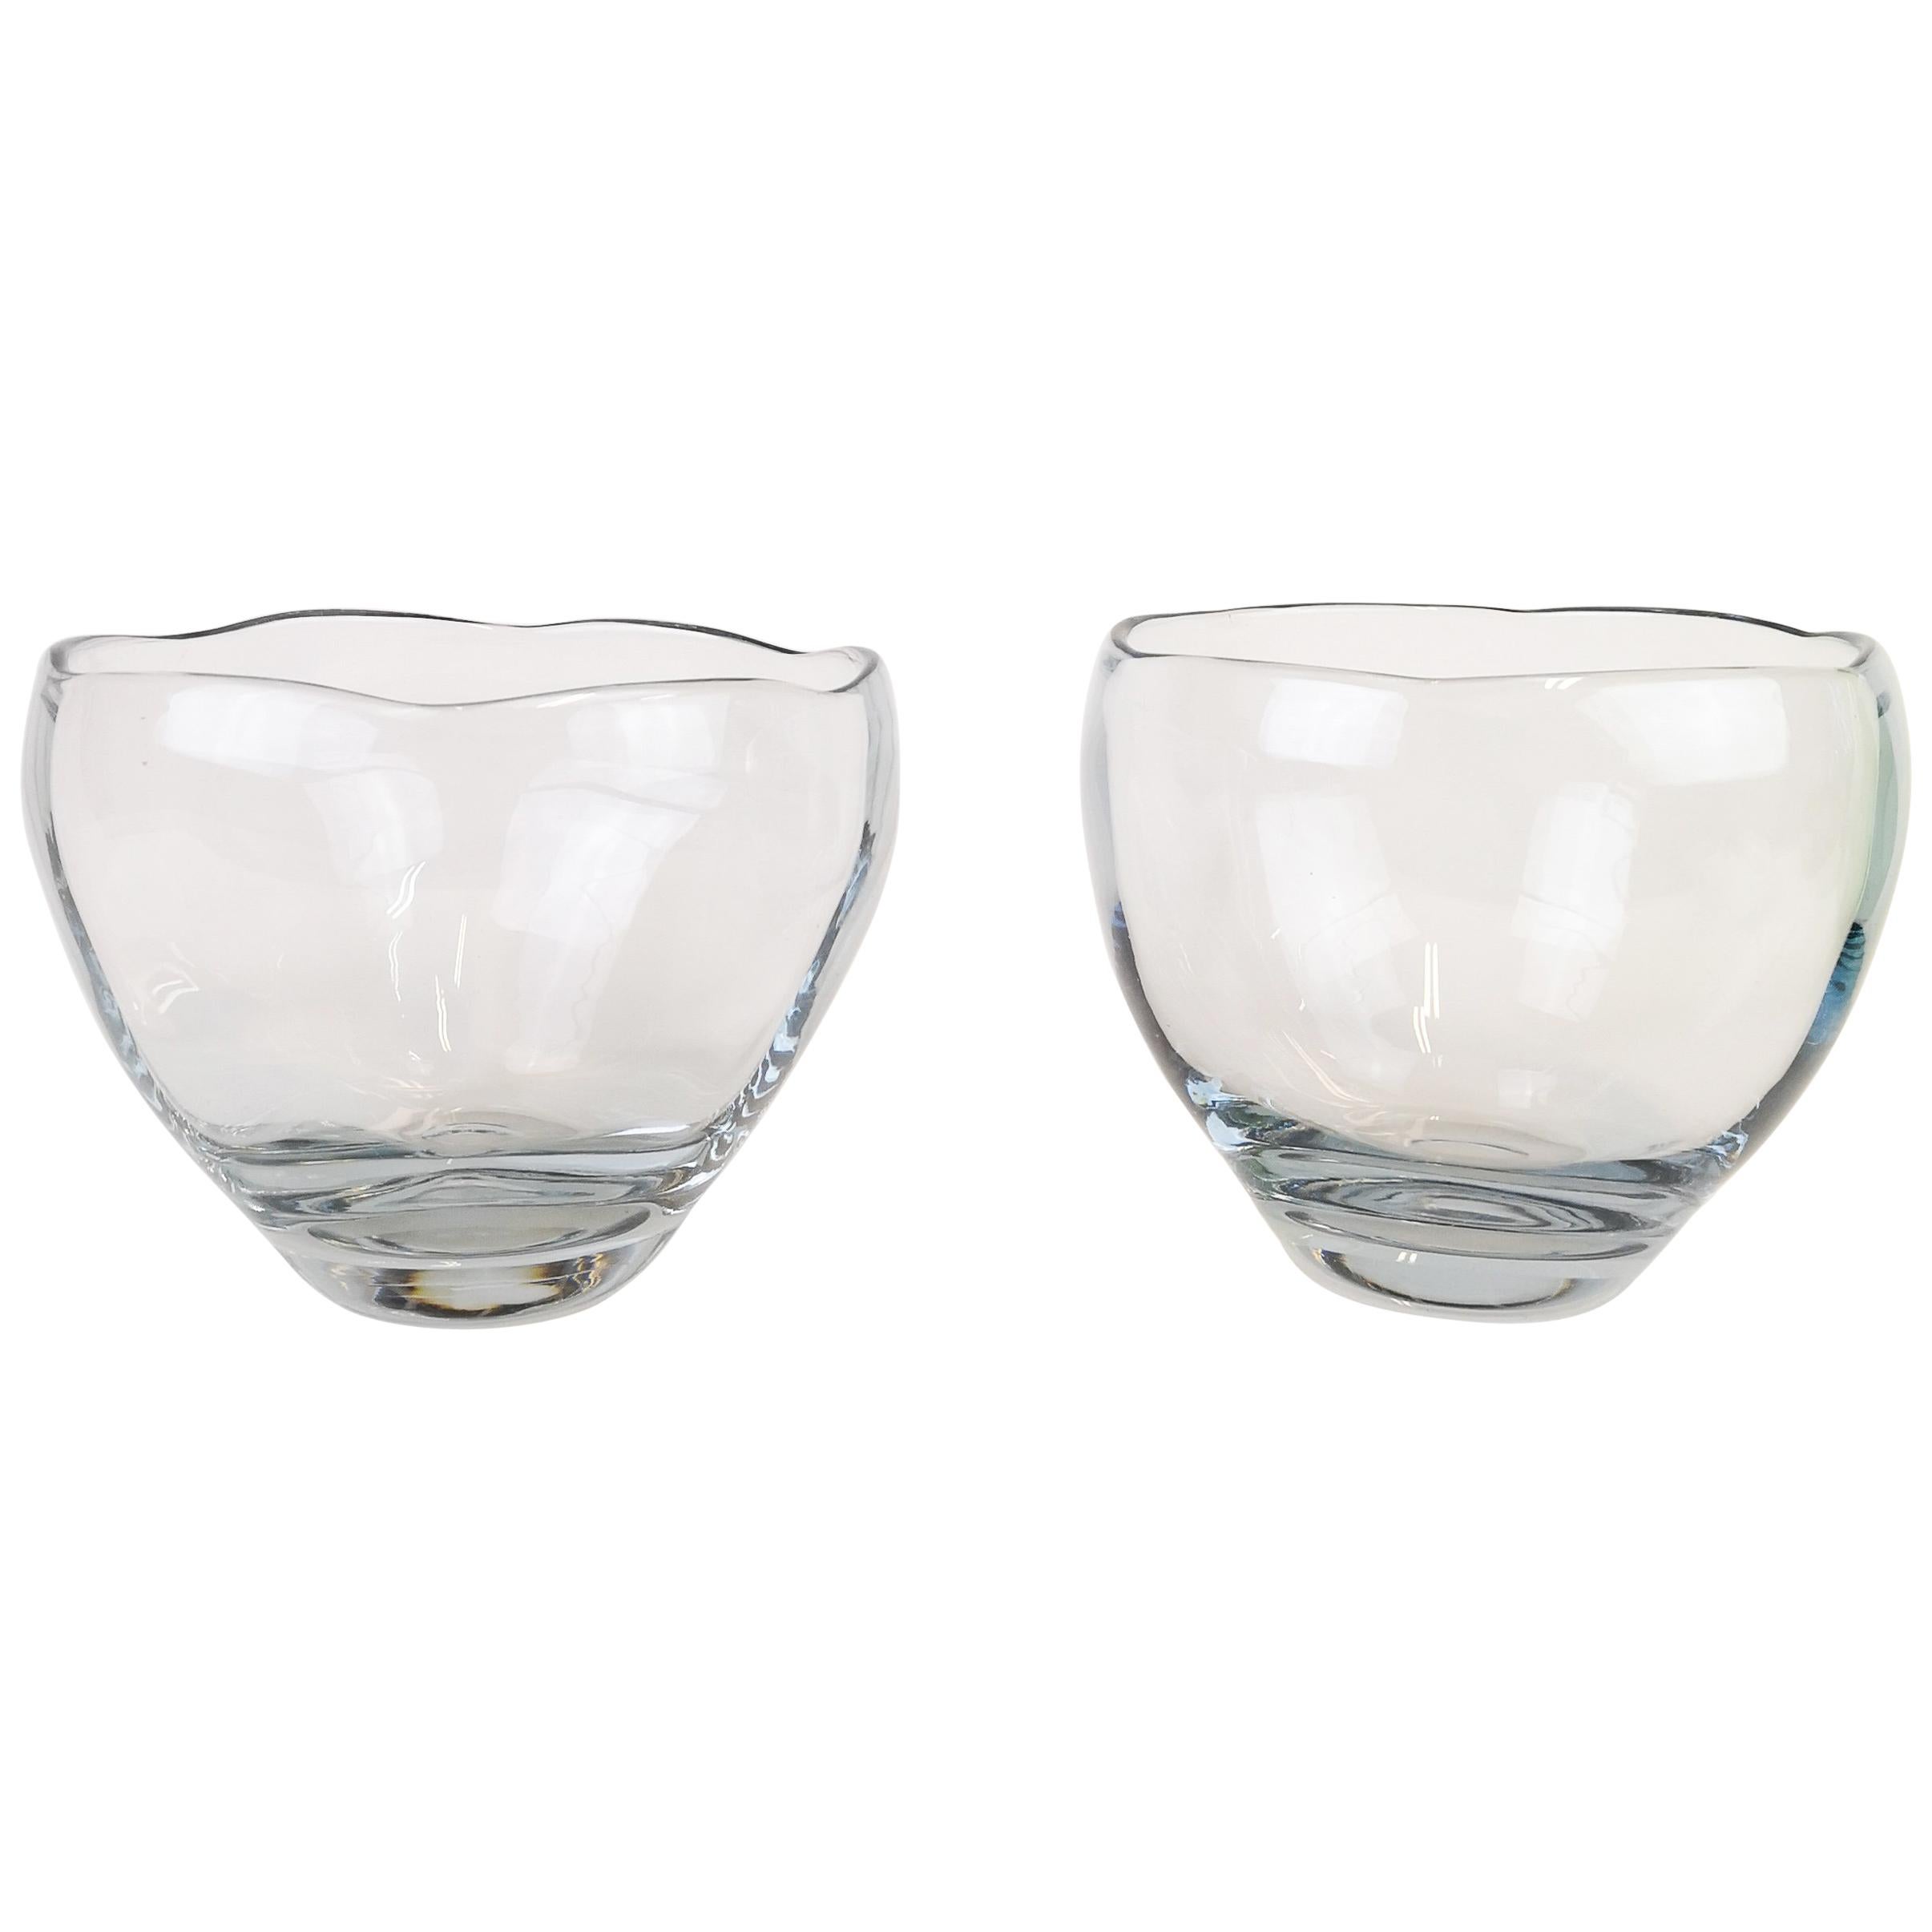 Midcentury Modern Set of 2 Crystal Bowls Asta Strömberg Sweden, 1950s For Sale